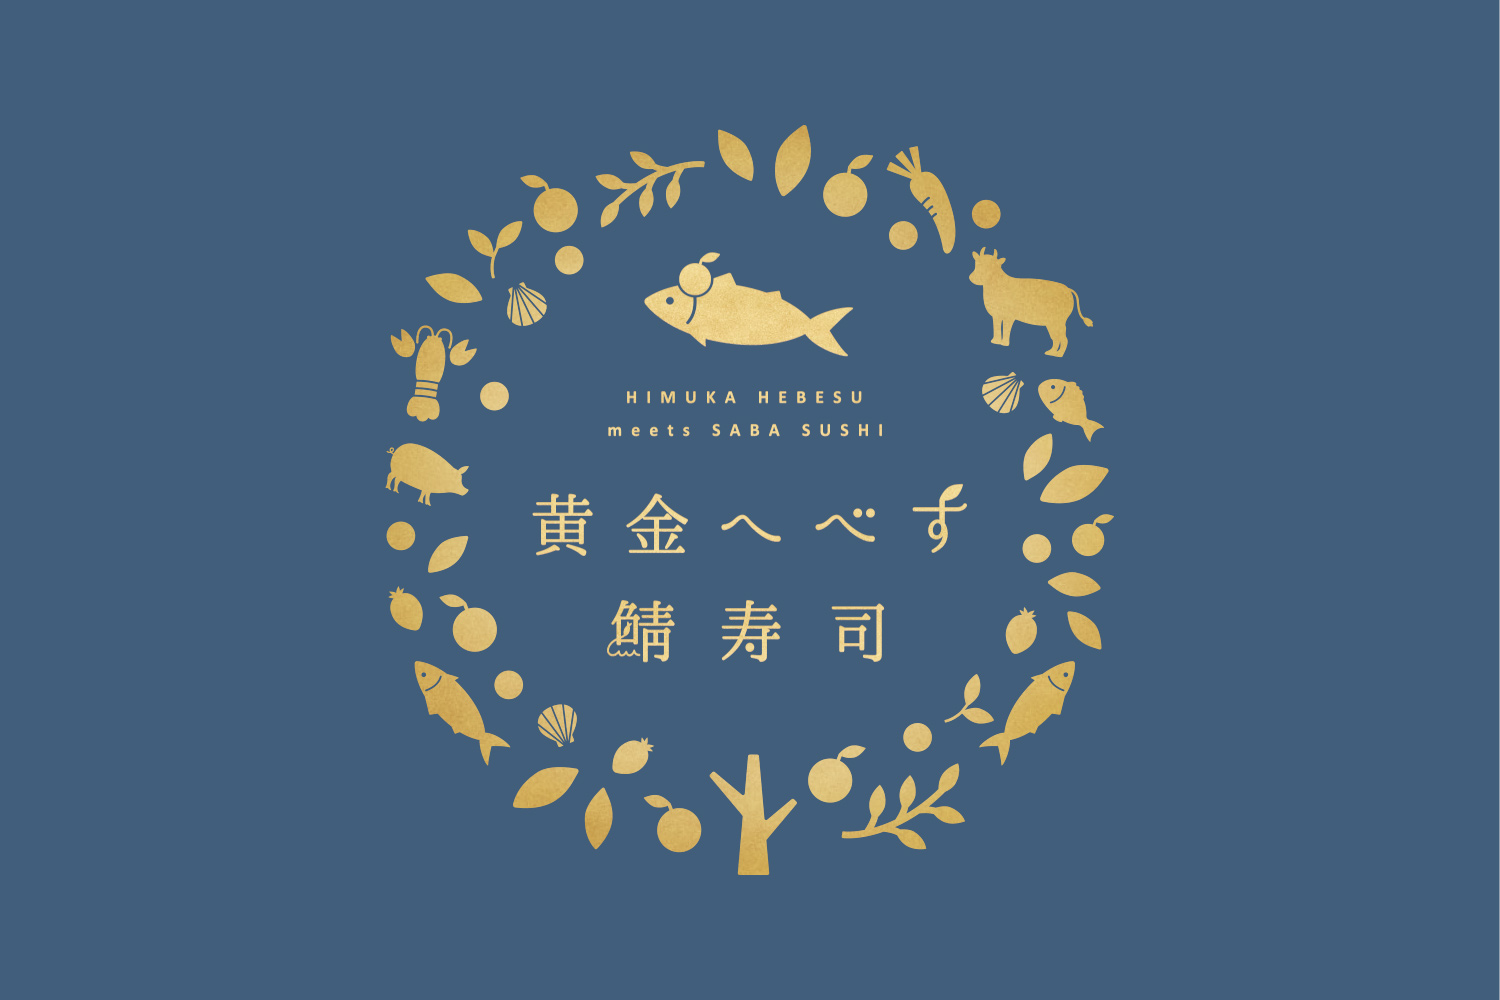 黄金へべす鯖寿司のロゴマークデザイン